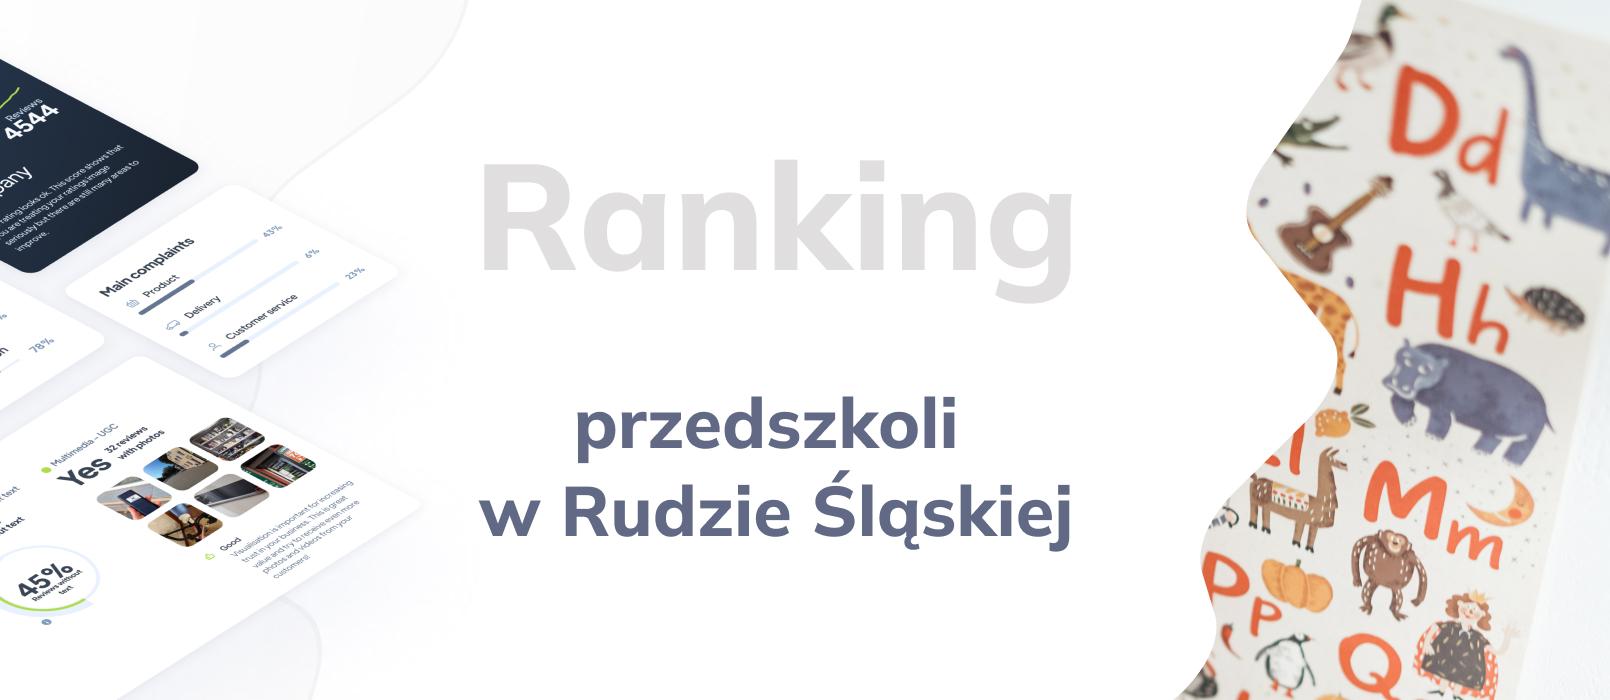 Przedszkola w Rudzie Śląskiej - ranking TOP 10